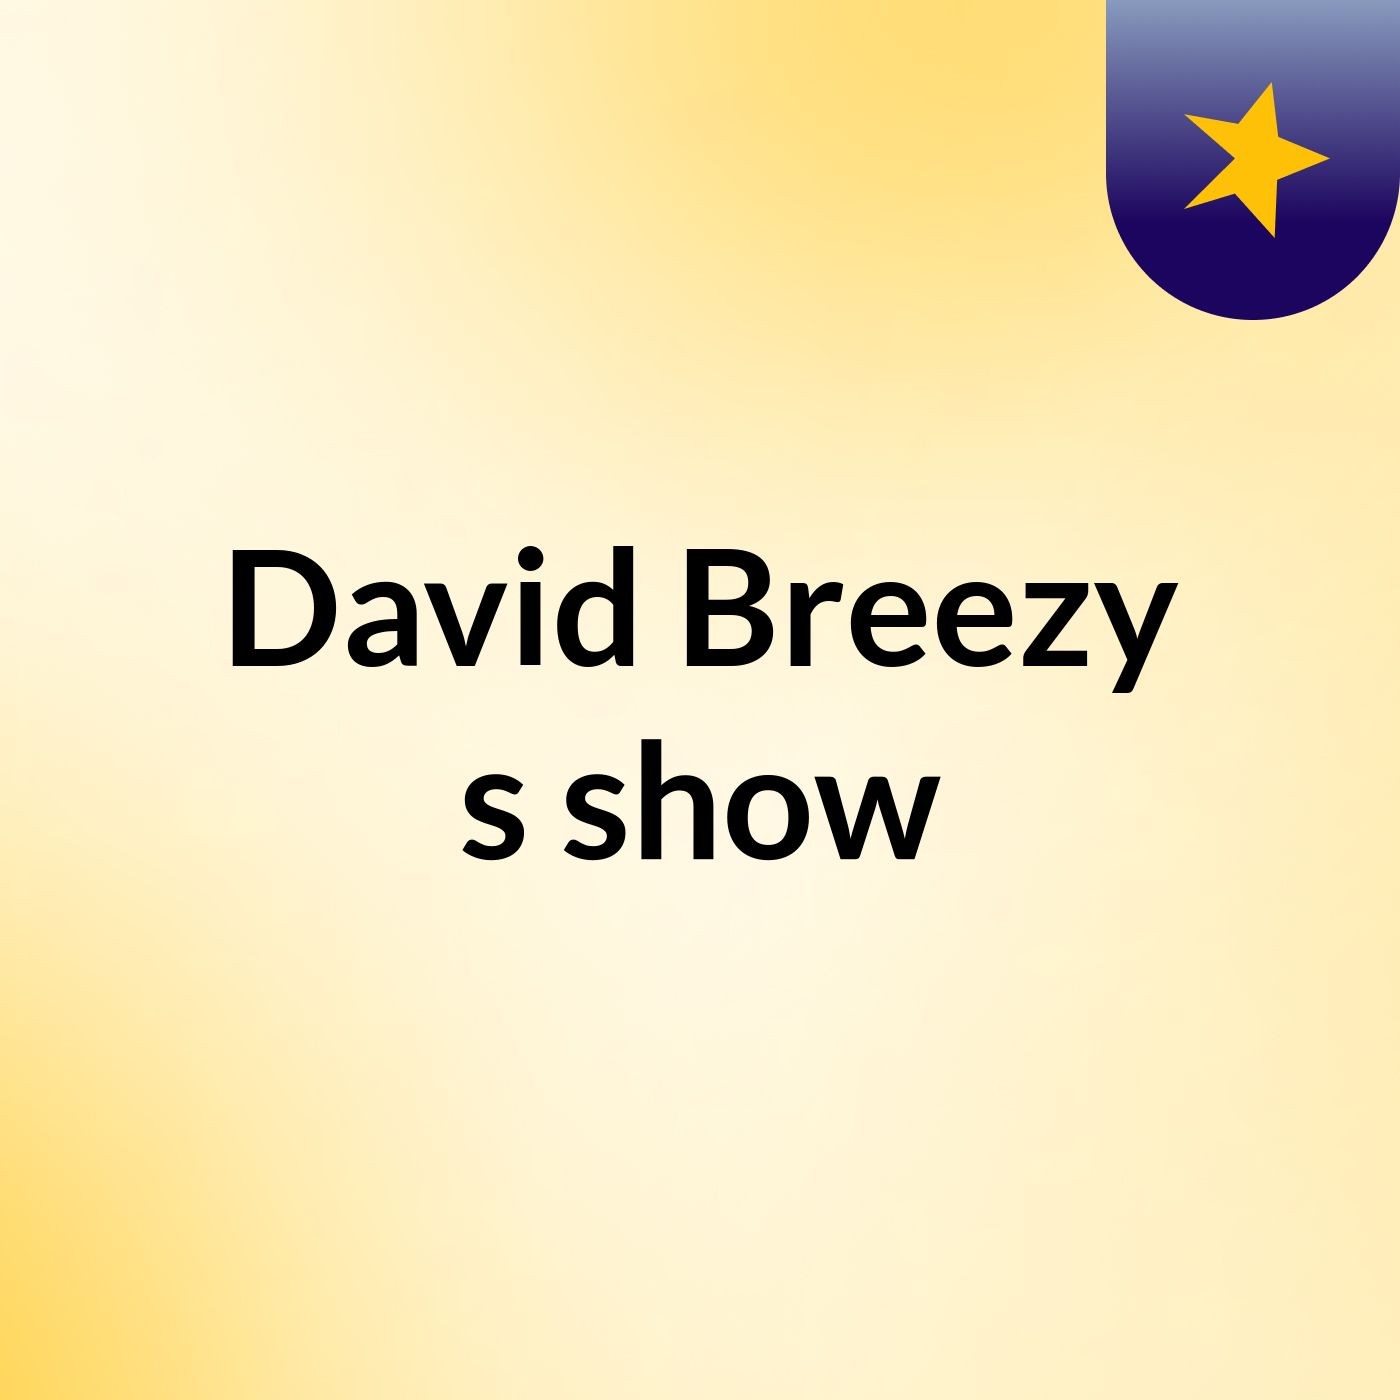 David Breezy's show